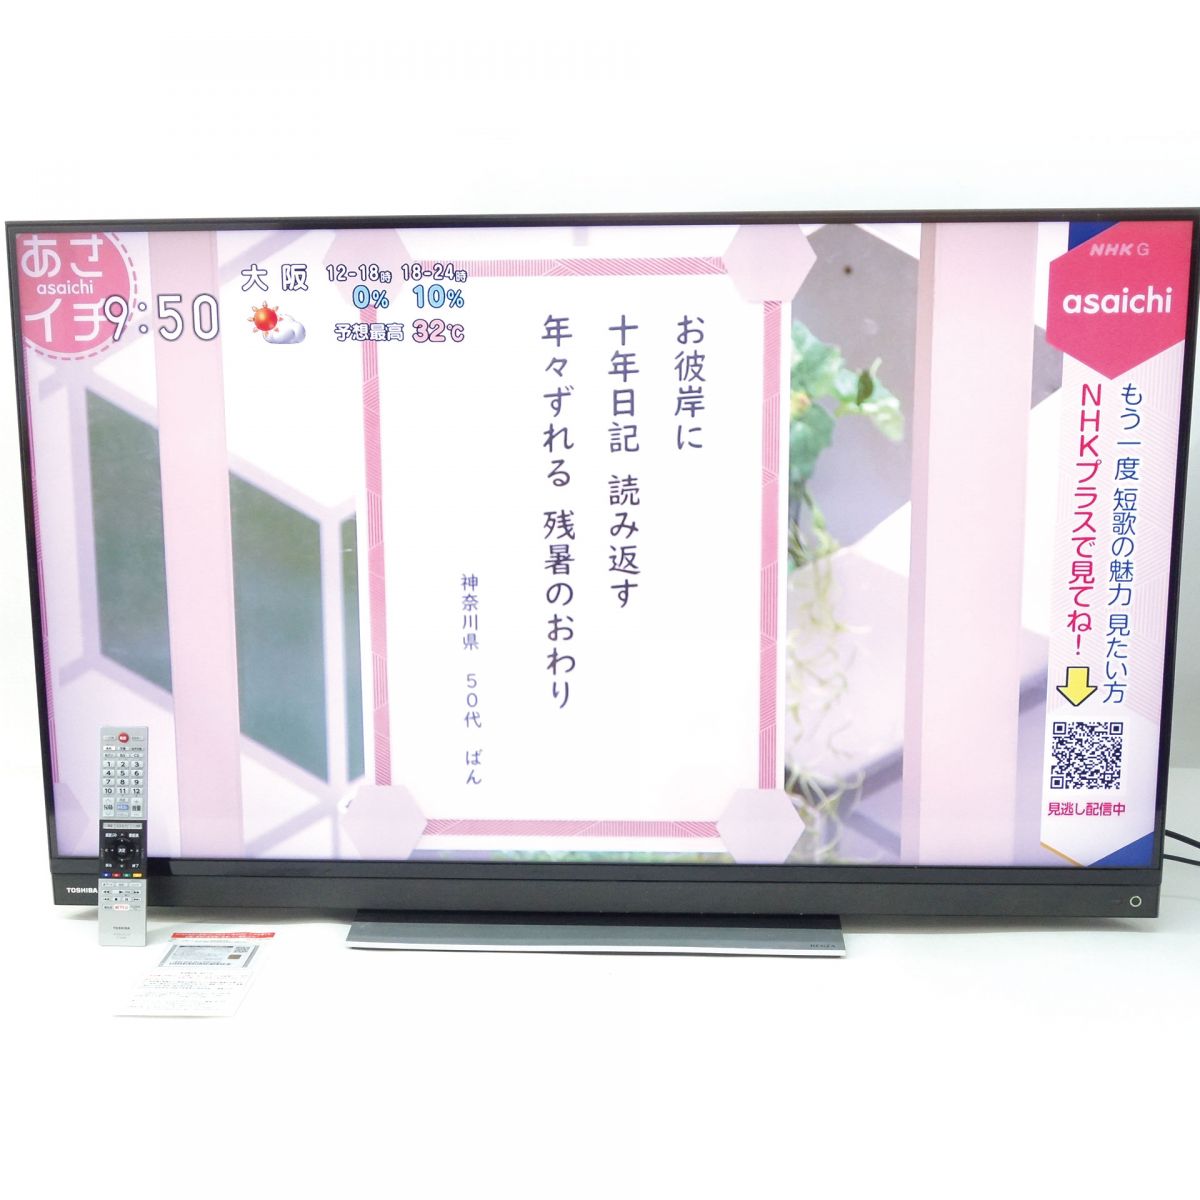 東芝 REGZA 55BM620X 液晶テレビ 2019年 ネット動画視聴○-